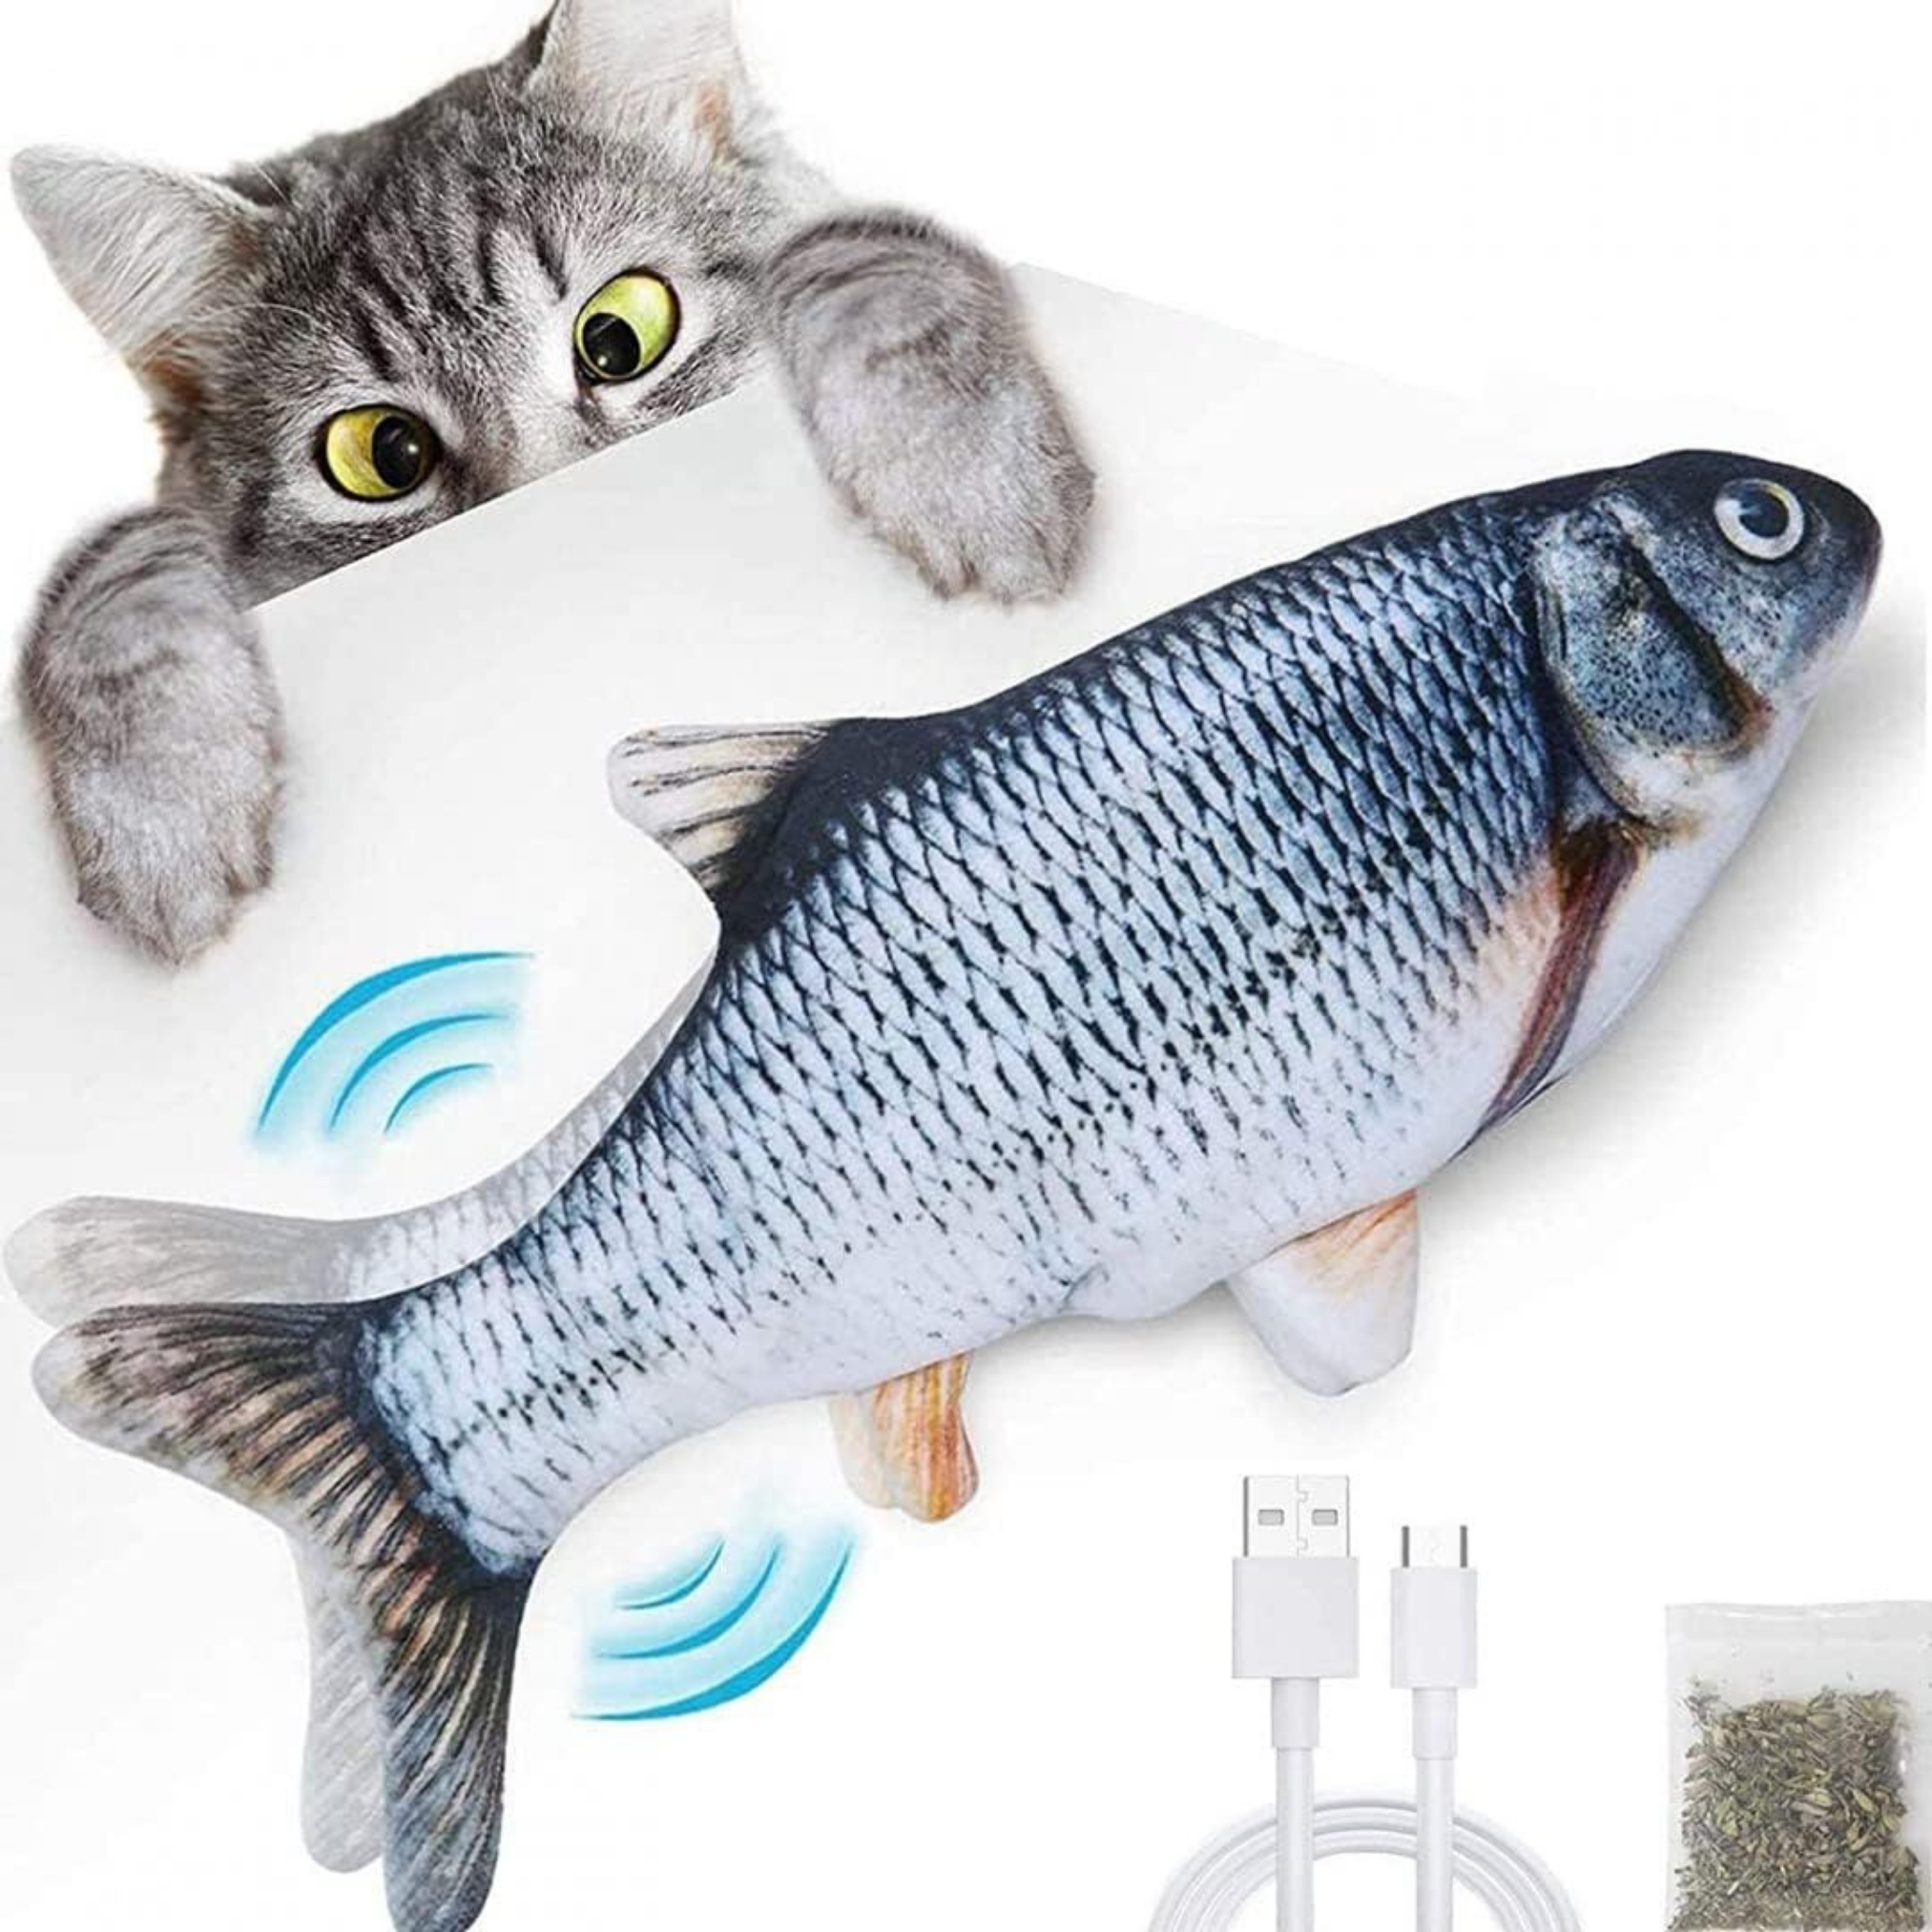 DIRECT Katzen Spielzeug Magic Fish BEST